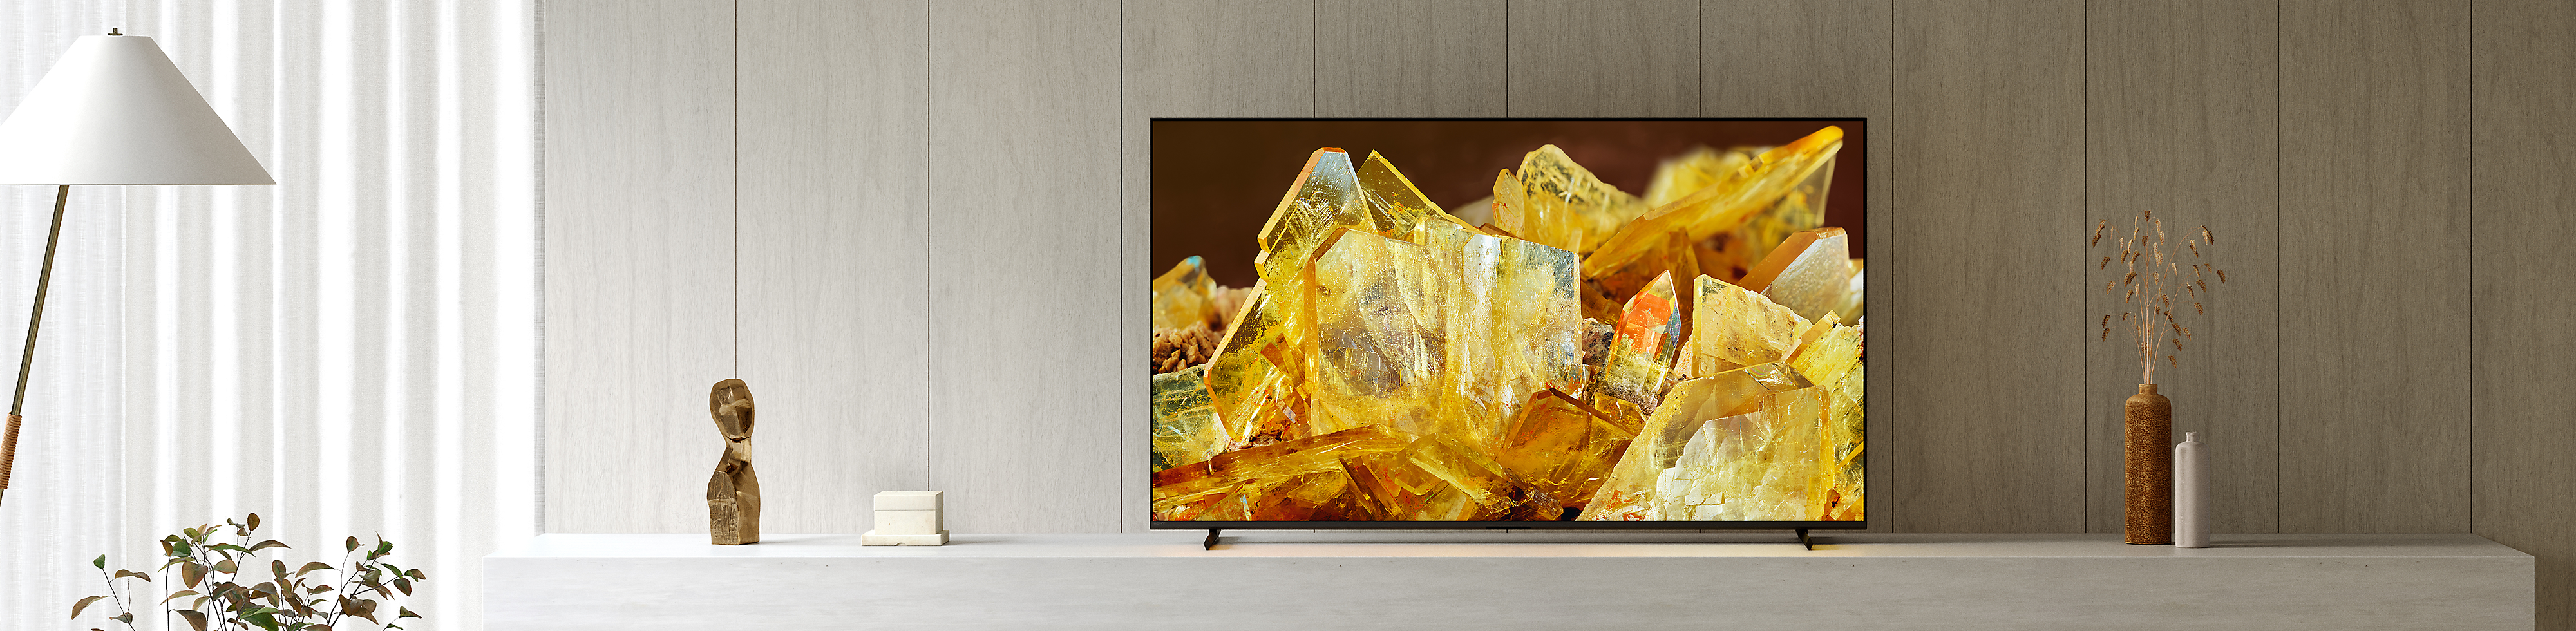 Téléviseur BRAVIA XR dans un salon, affichant un gros plan de cristaux de couleur ambre